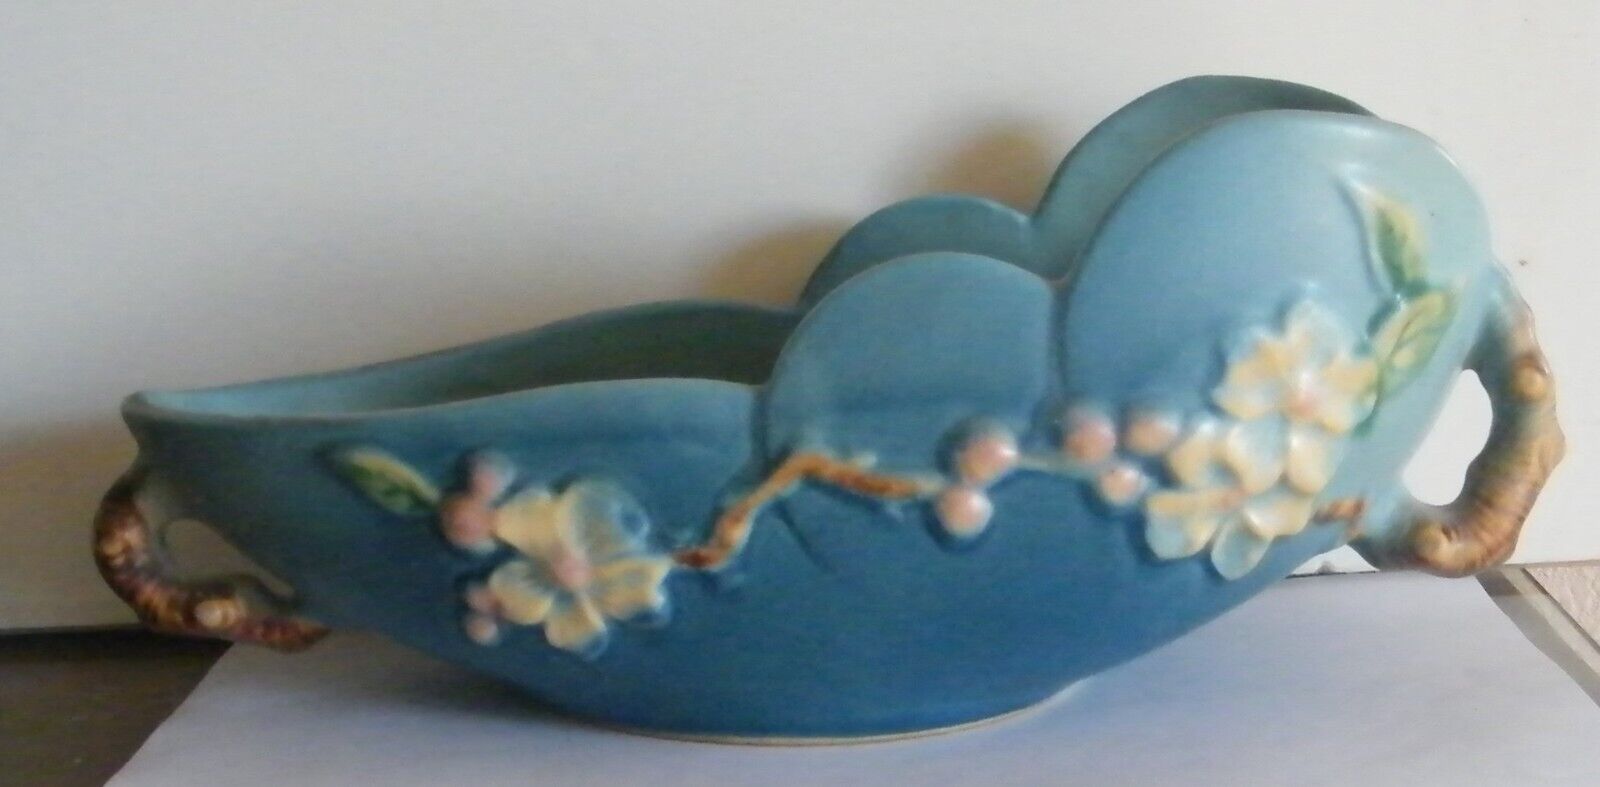 Roseville Pottery Bowl Apple Blossom Scalloped 2 Handled Blue ca 1948